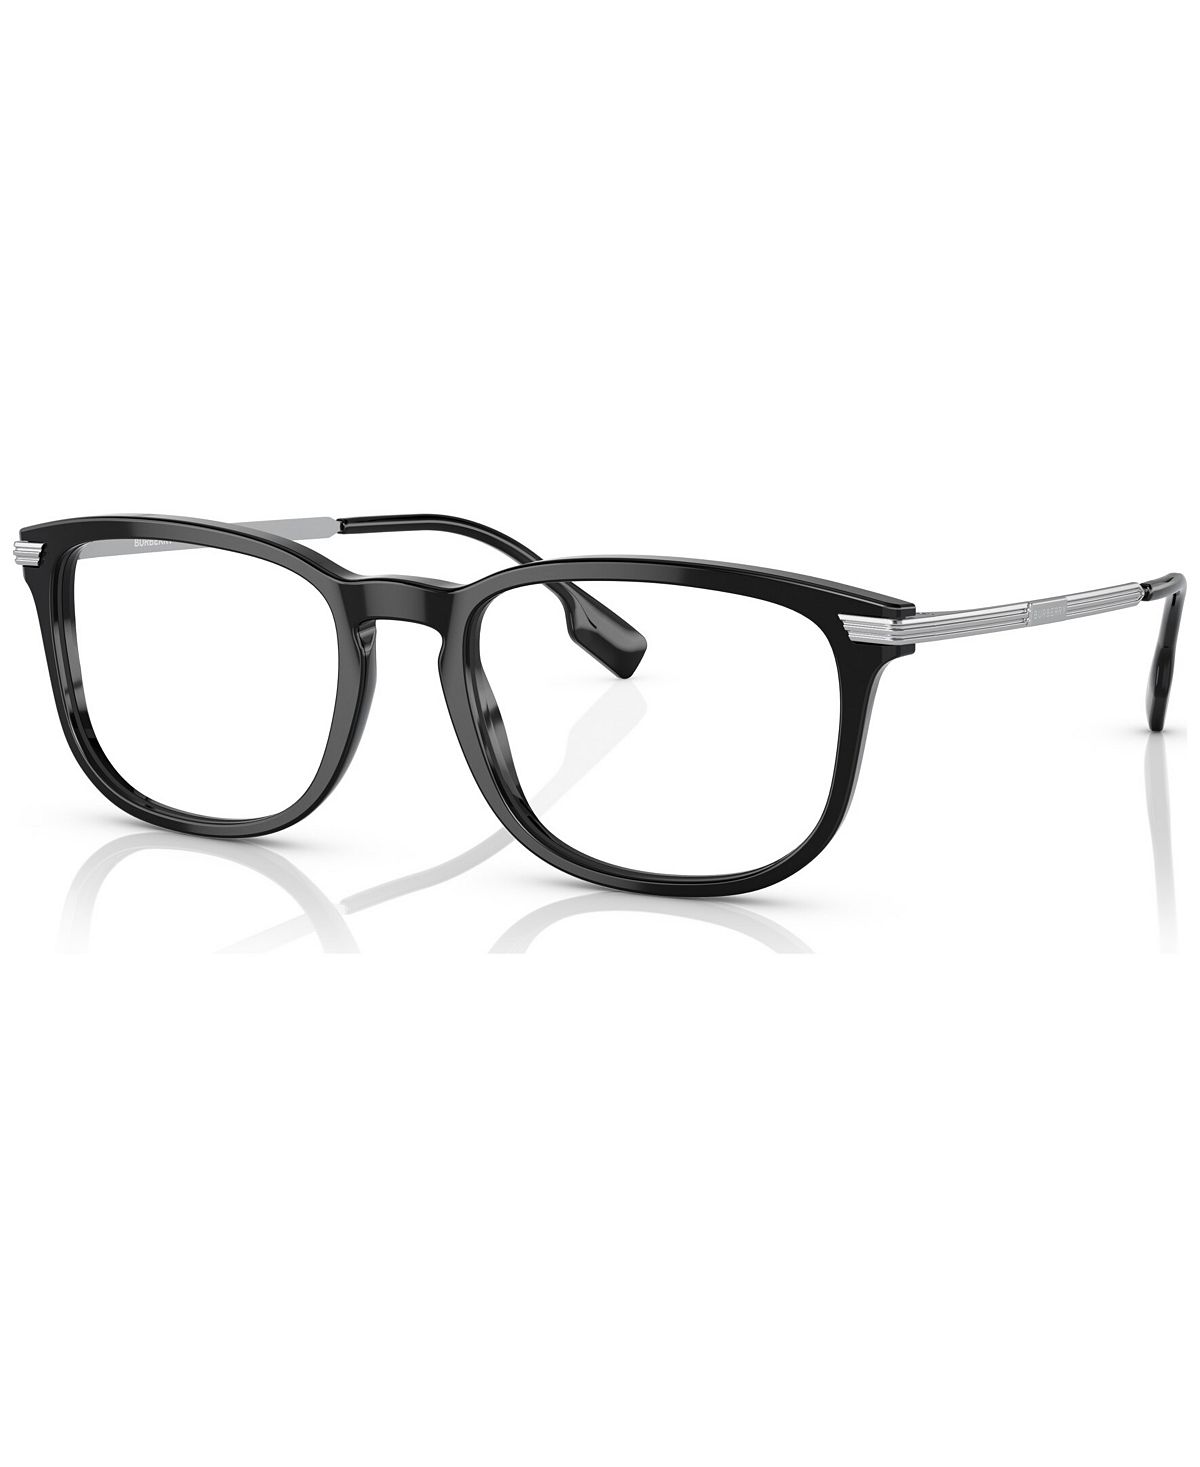 Мужские прямоугольные очки, BE236956-O Burberry мужские прямоугольные очки be236954 o burberry